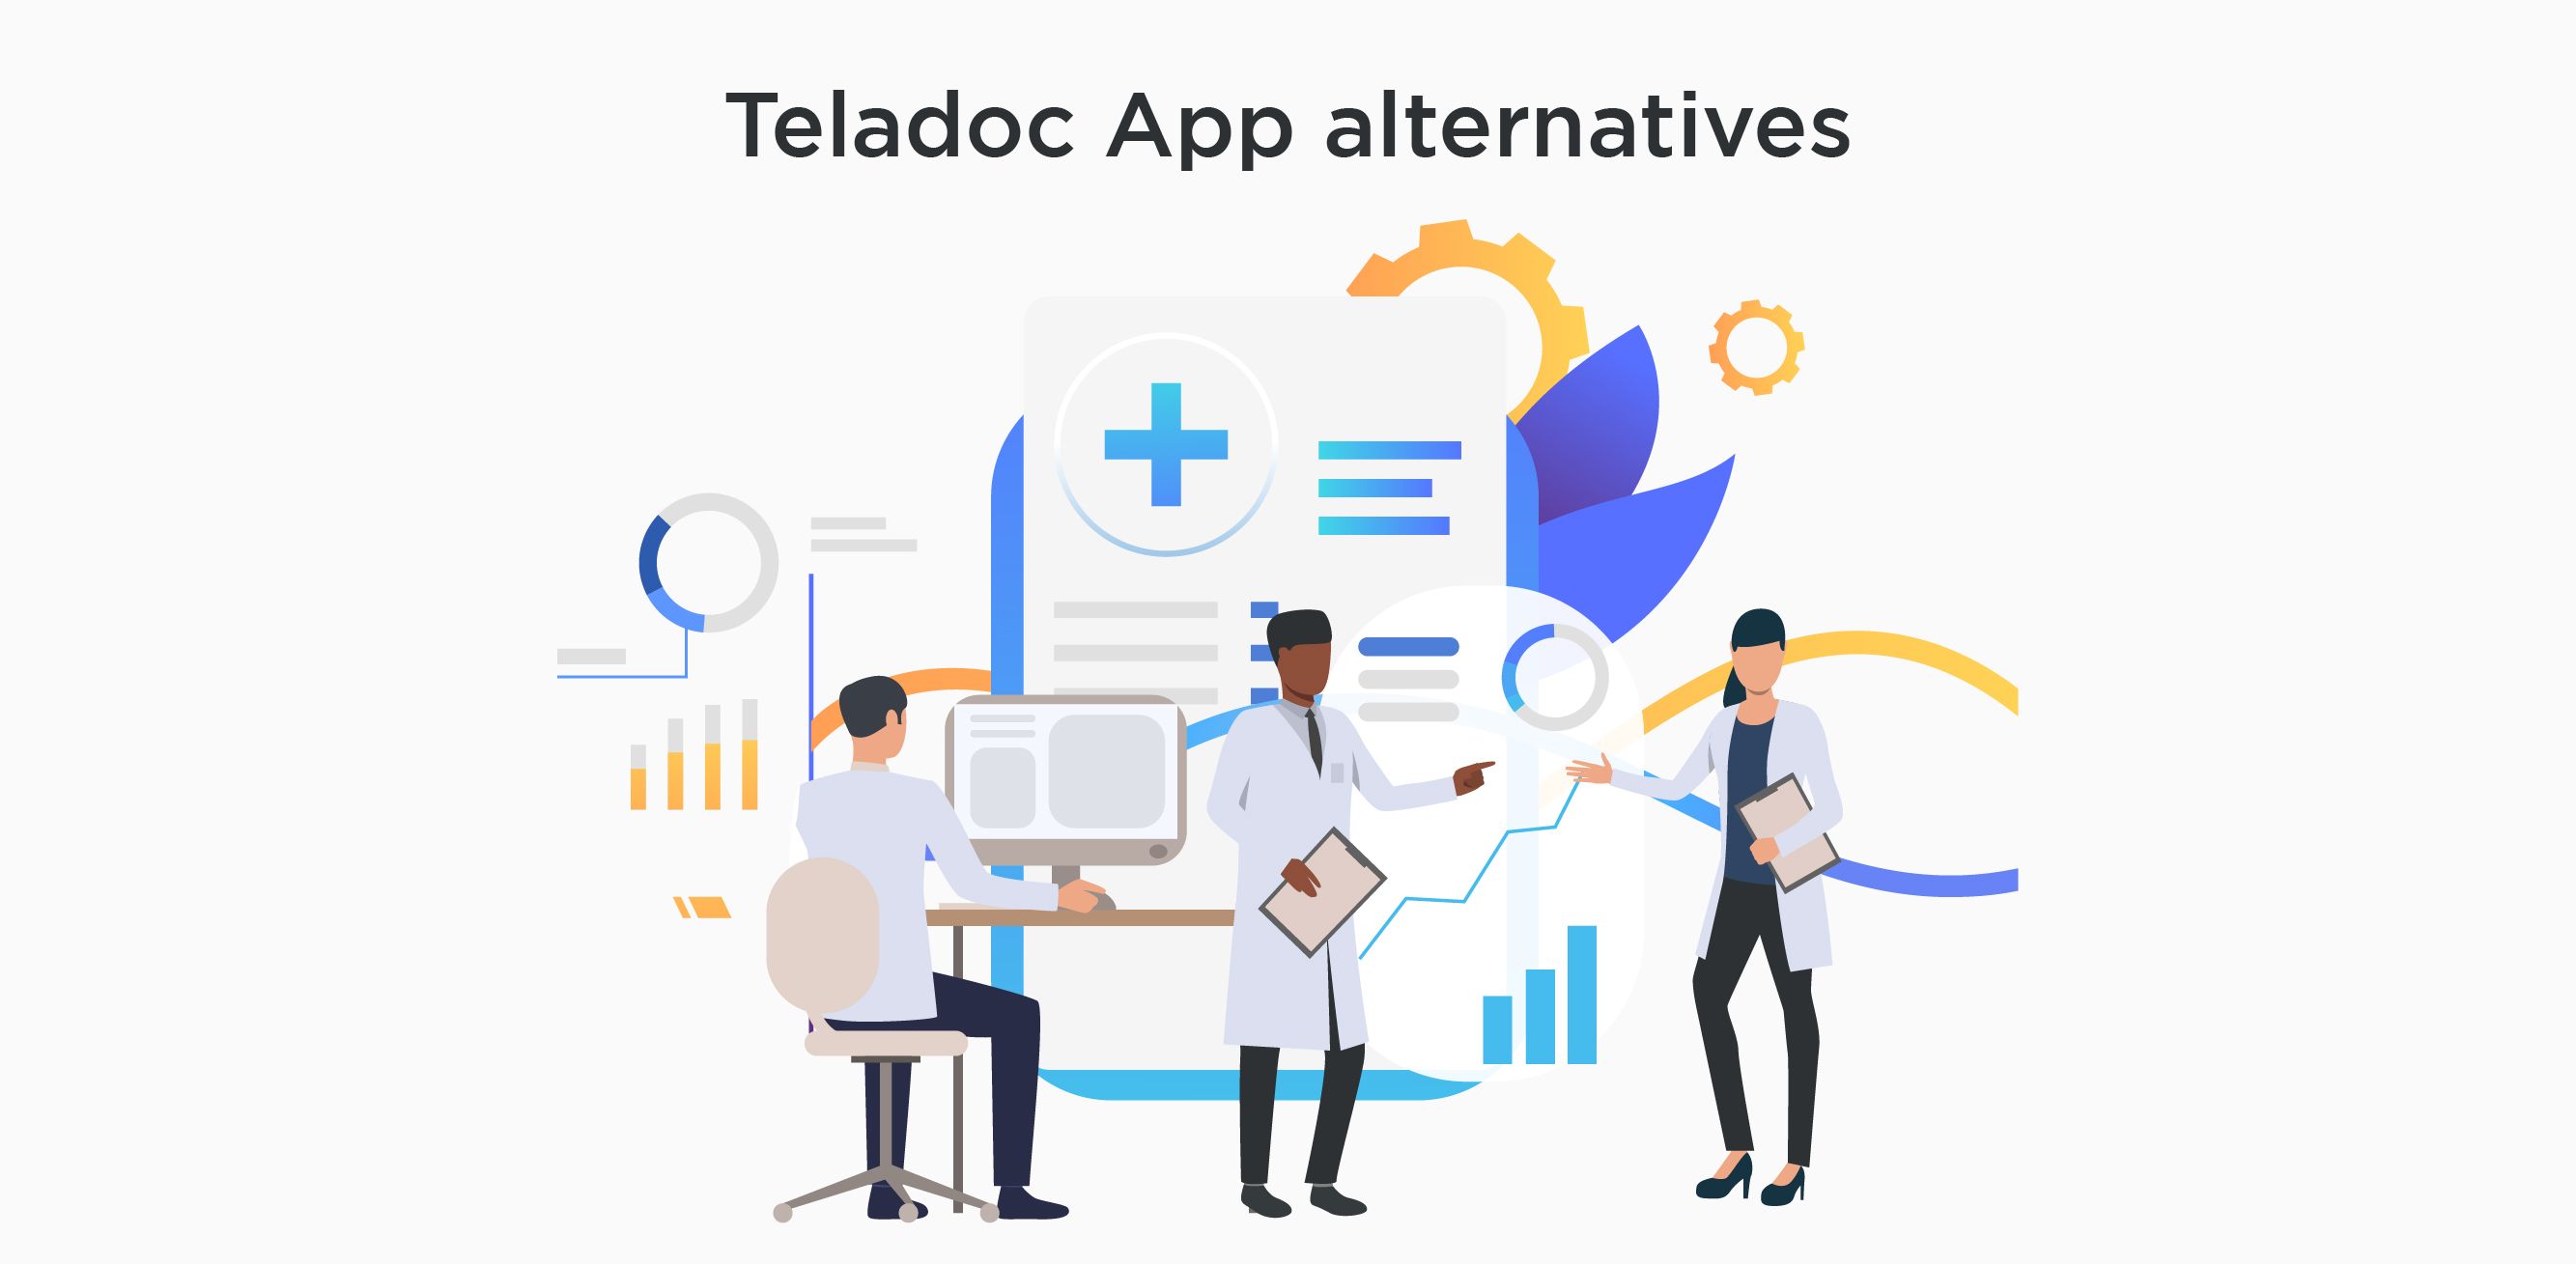 Teladoc App alternatives